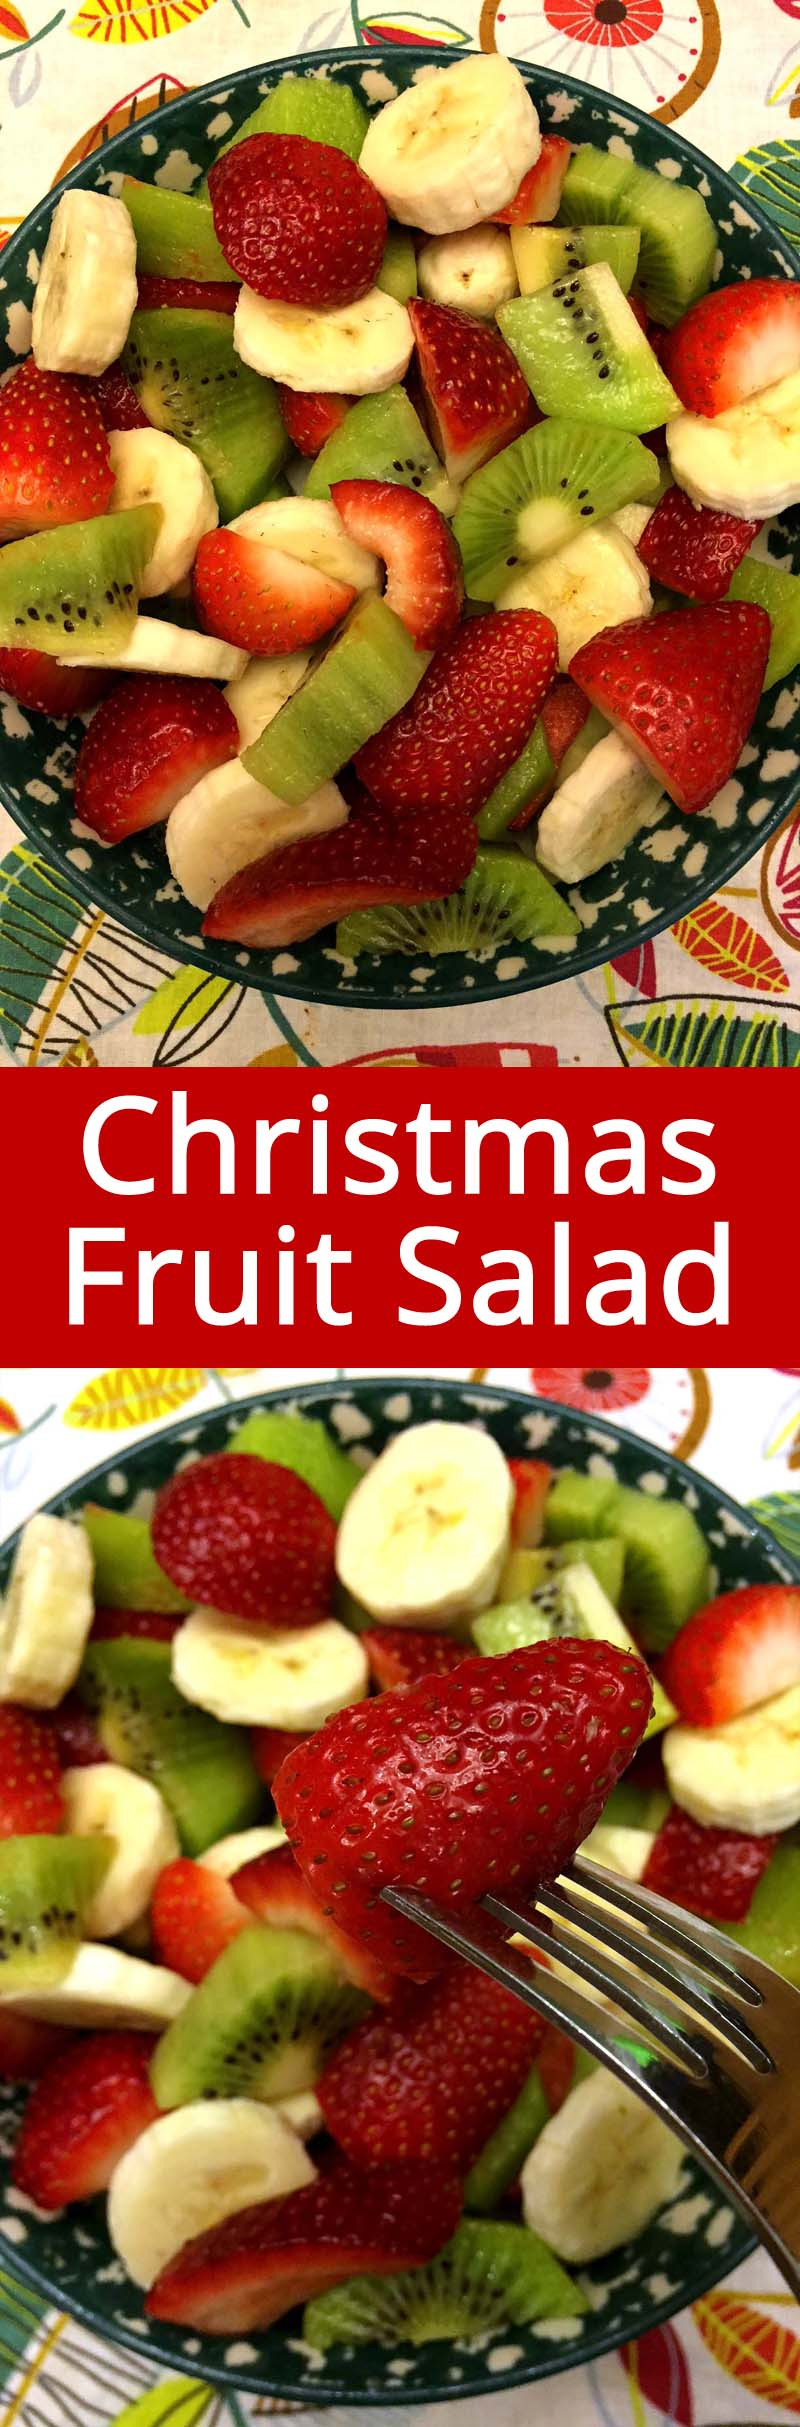 Christmas Fruit Salads Recipes
 Christmas Fruit Salad With Strawberries Kiwis and Bananas